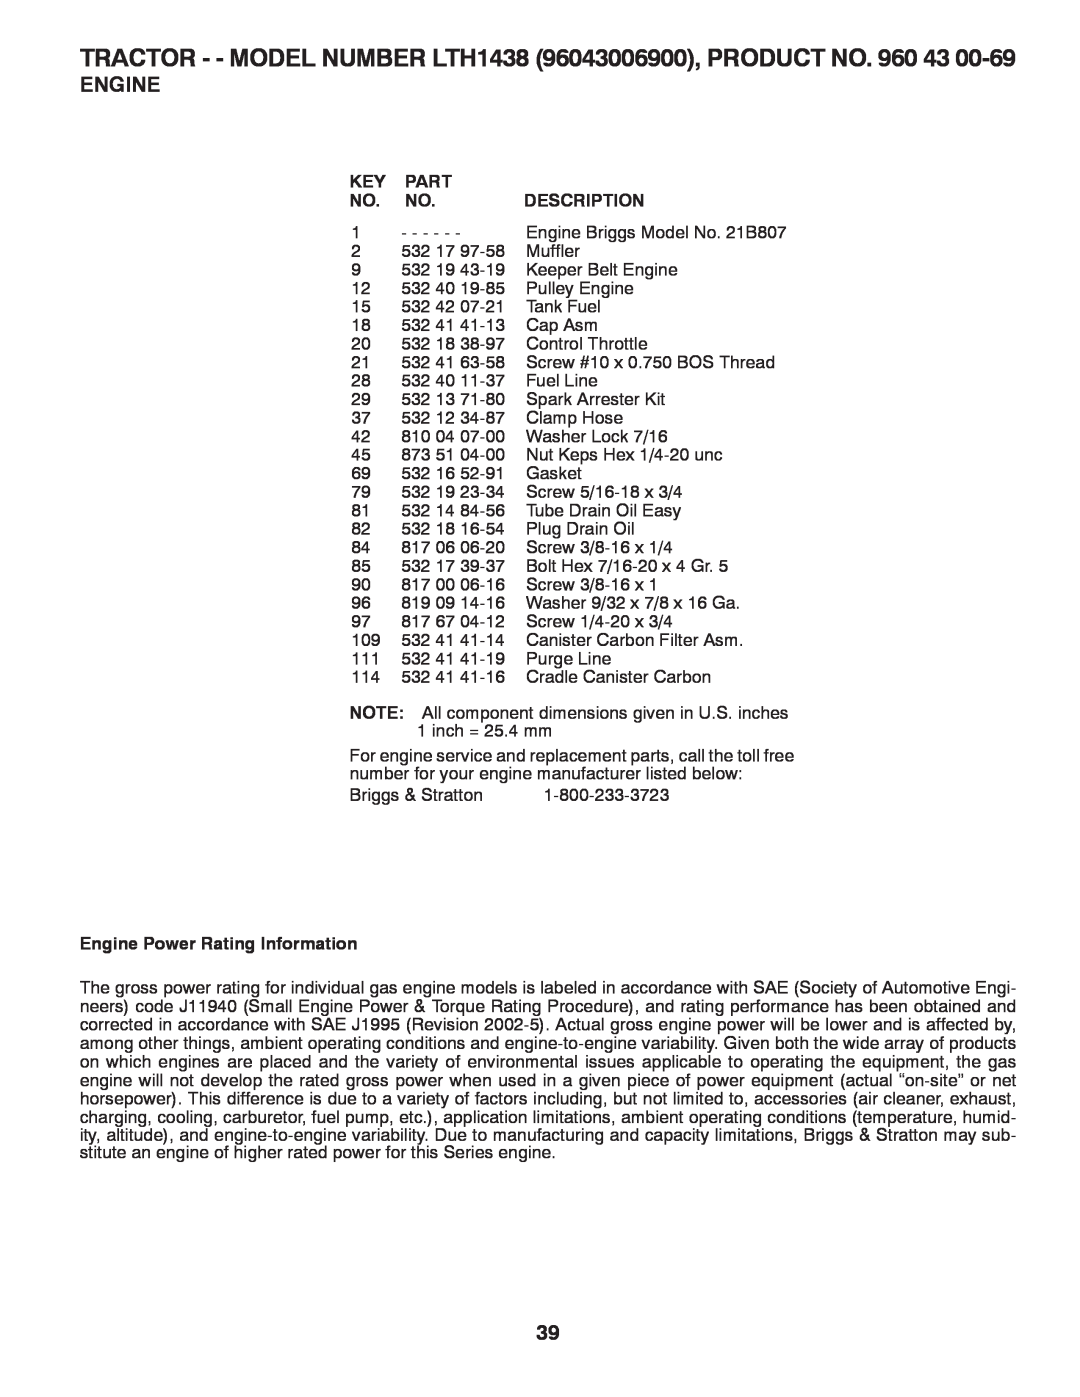 Husqvarna LTH1438 owner manual Part, Description, Engine Power Rating Information 